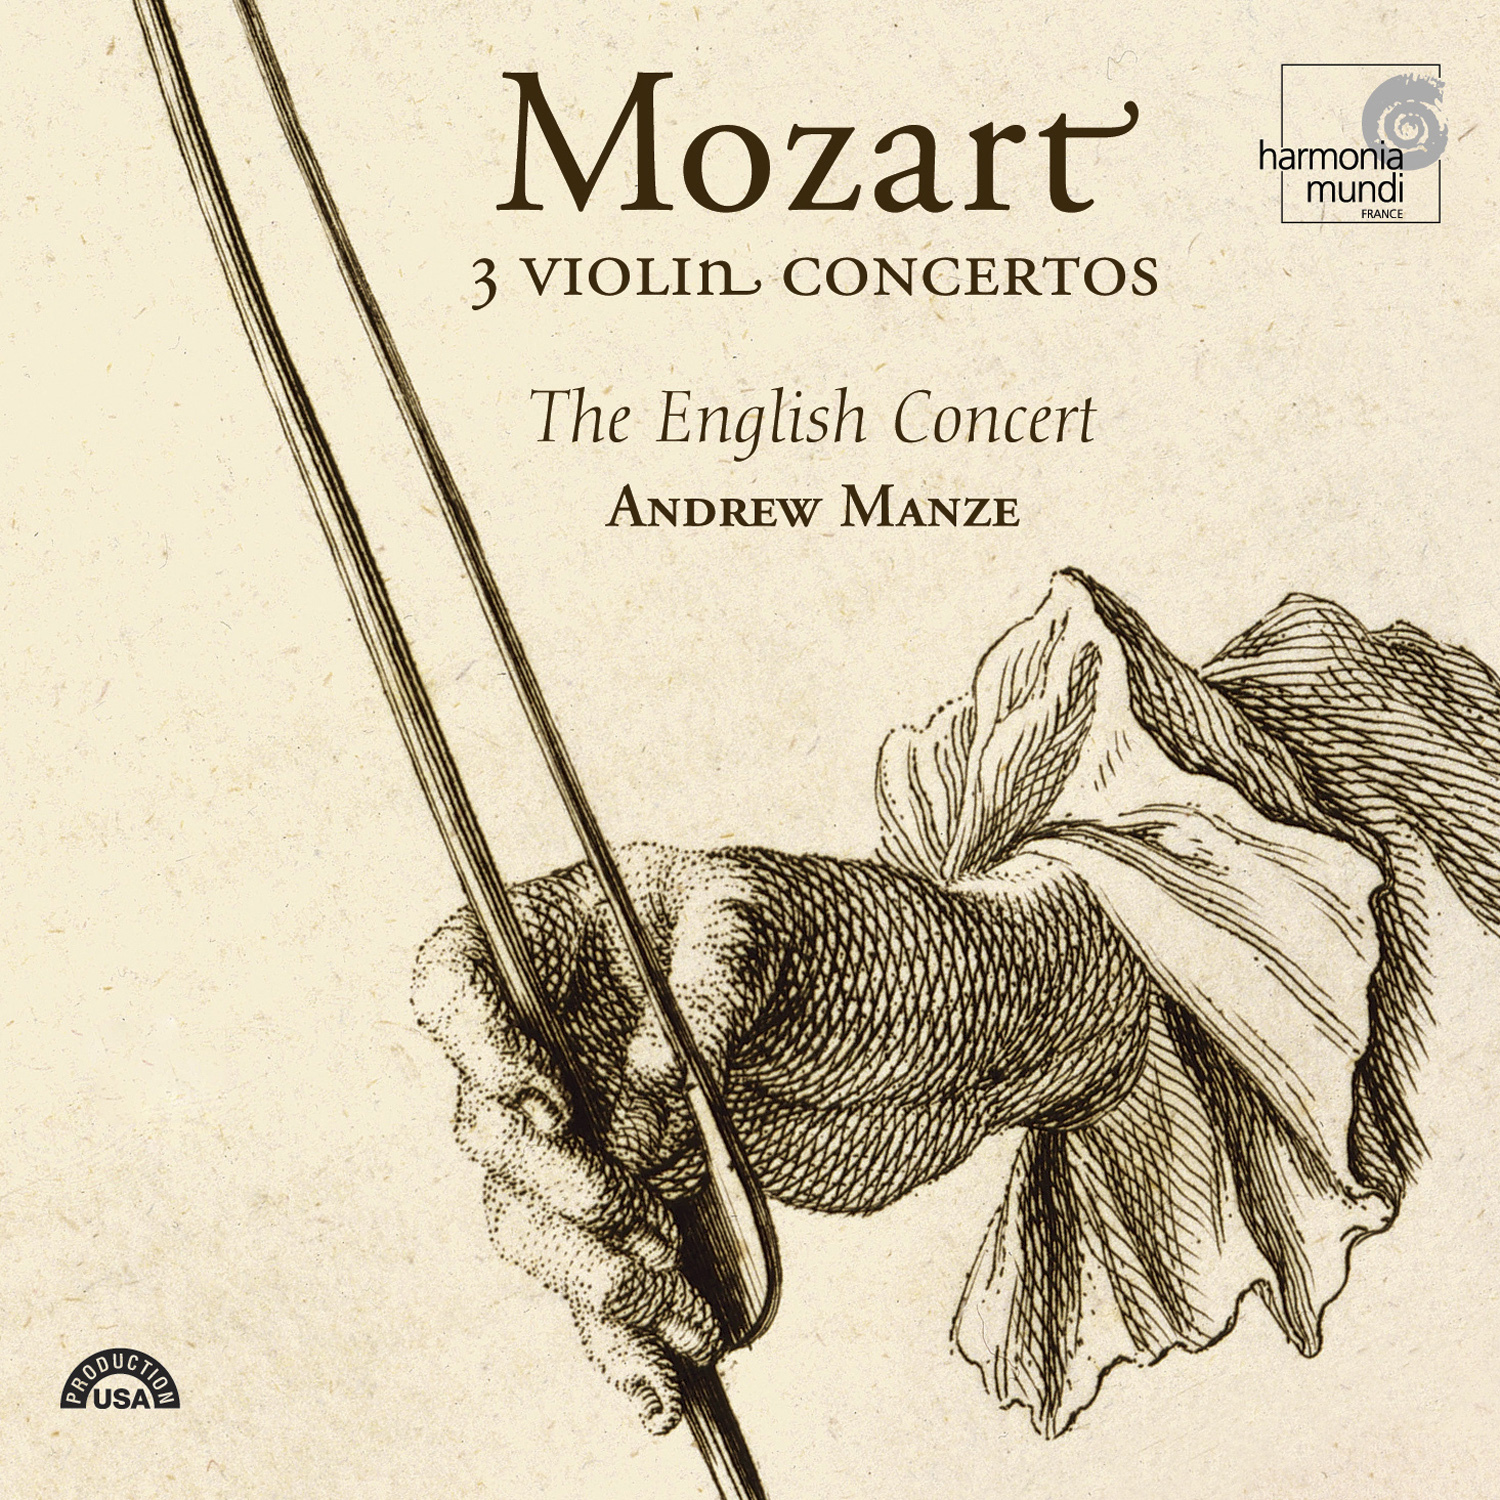 Violin Concerto No. 3 in G major, K. 216: III. Rondo:  Allegro - Andante - Allegretto - Tempo primo